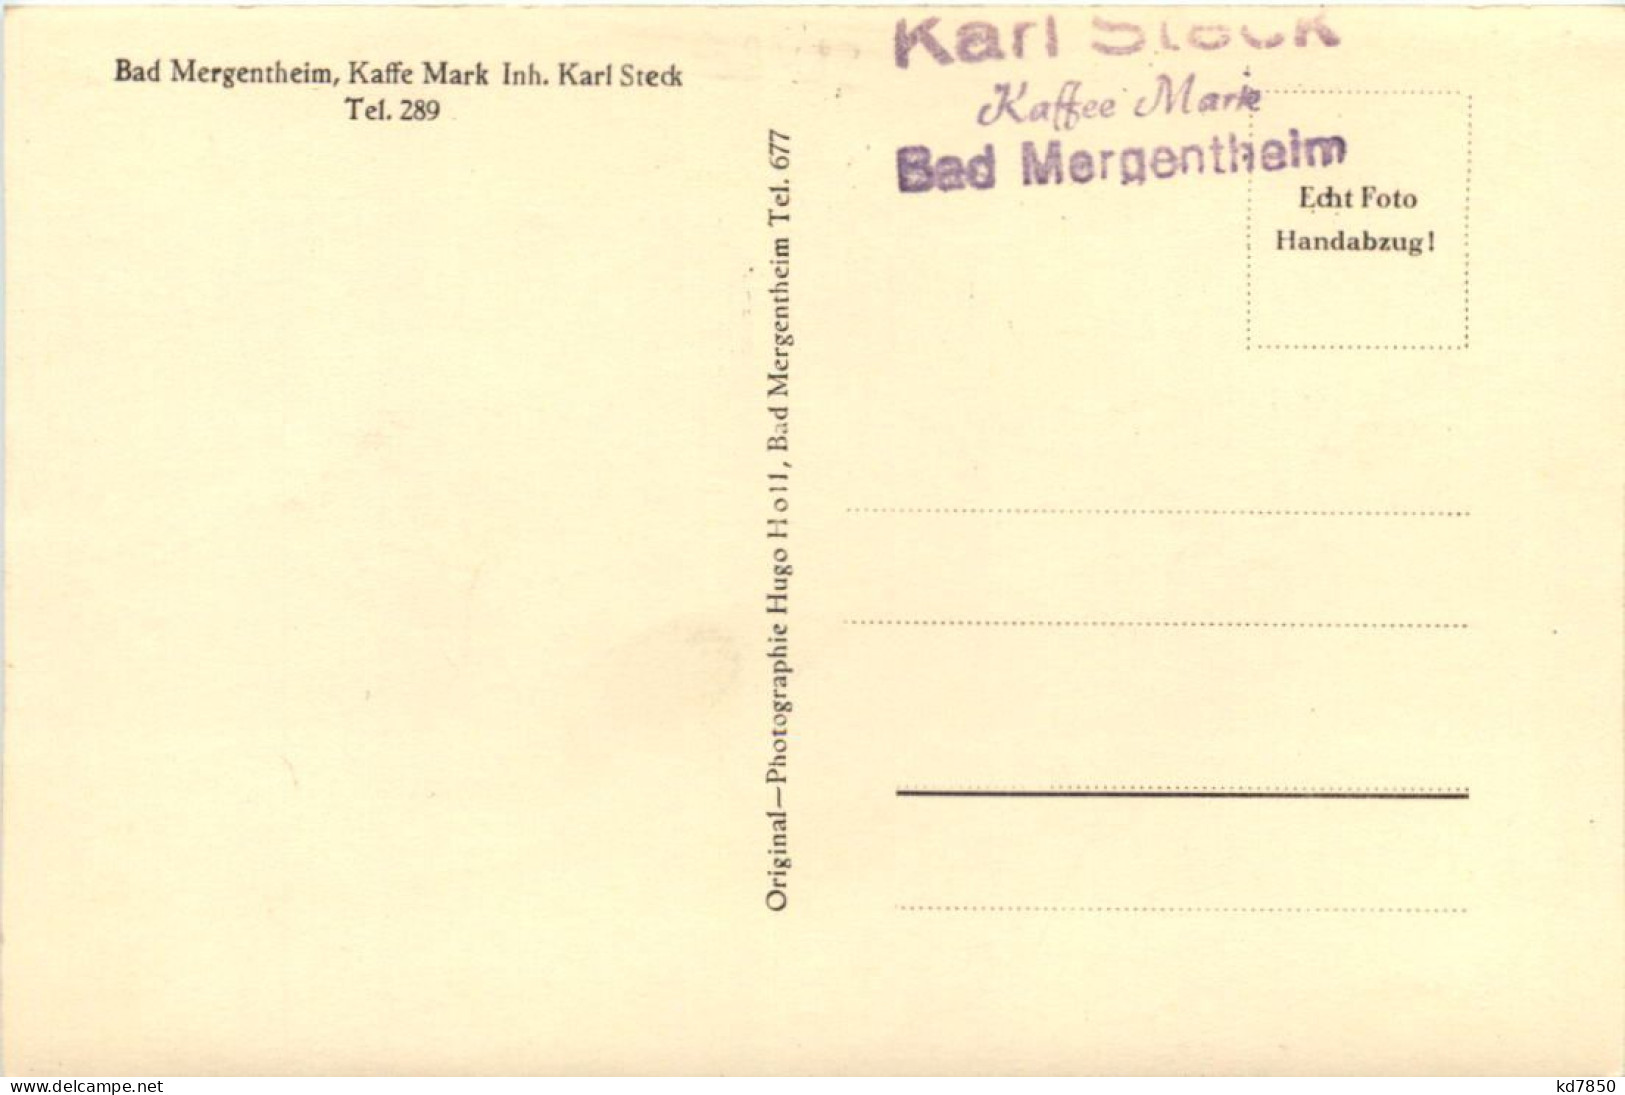 Bad Mergentheim, Kaffee-Mark Karl Steck - Bad Mergentheim